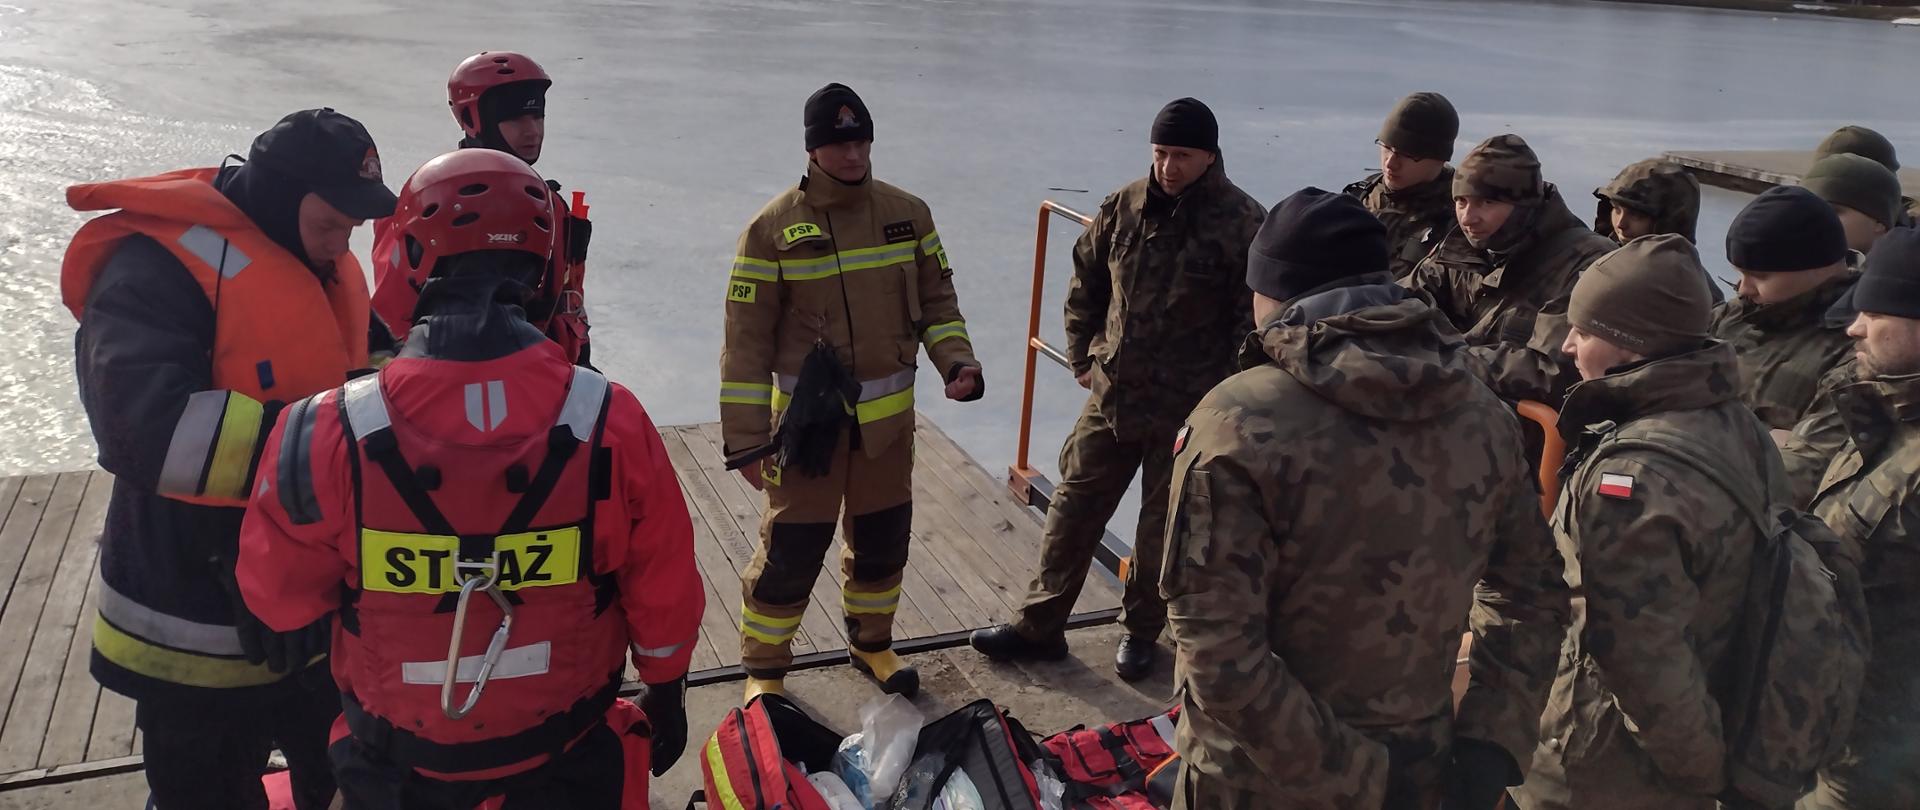 Na zdjęciu widać na pomoście zbiornika wodnego strażaków oraz żołnierzy WOT. Strażacy pokazują sprzęt i wyjaśniają zasady działań ratownictwa lodowego. Trzech strażaków ubranych jest w sprzęt do podejmowania osób z wody.